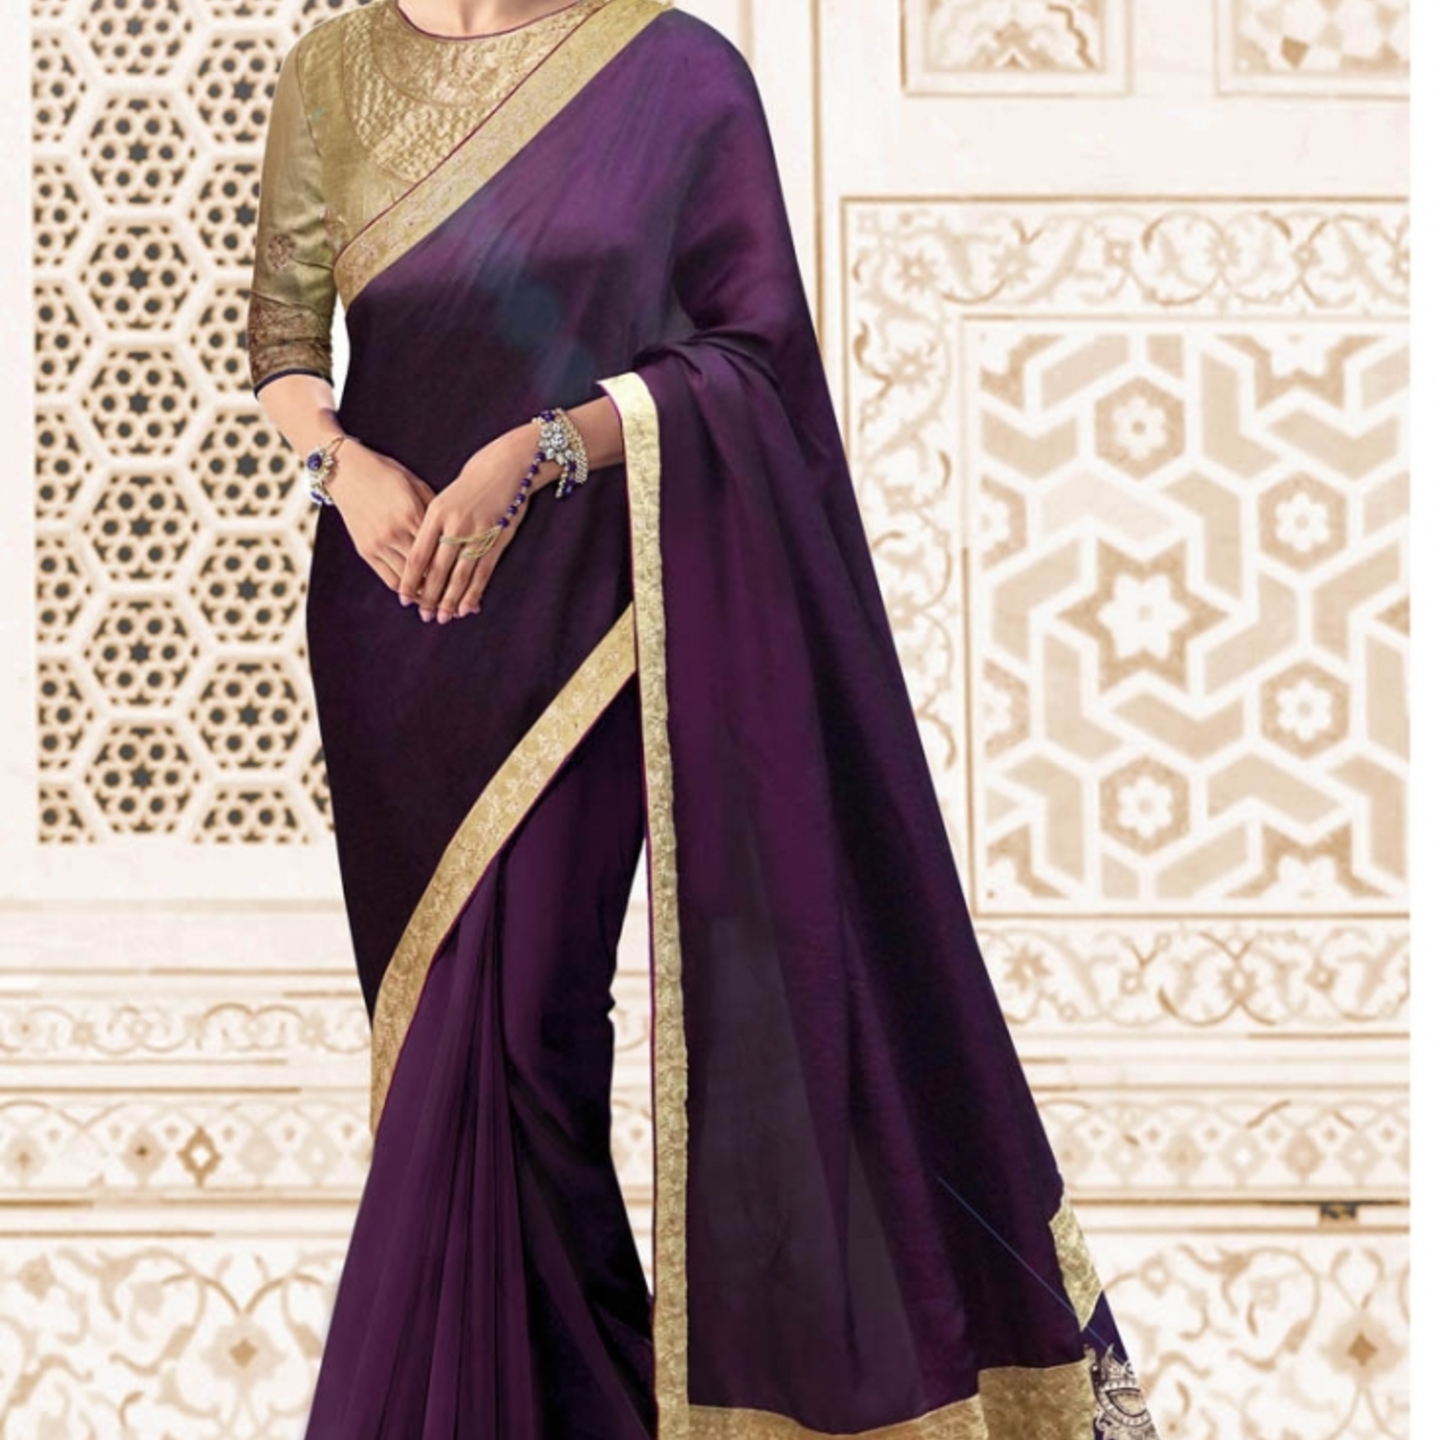 Robe Riche Purple Color Malai Silk Embroidery With Lace Saree